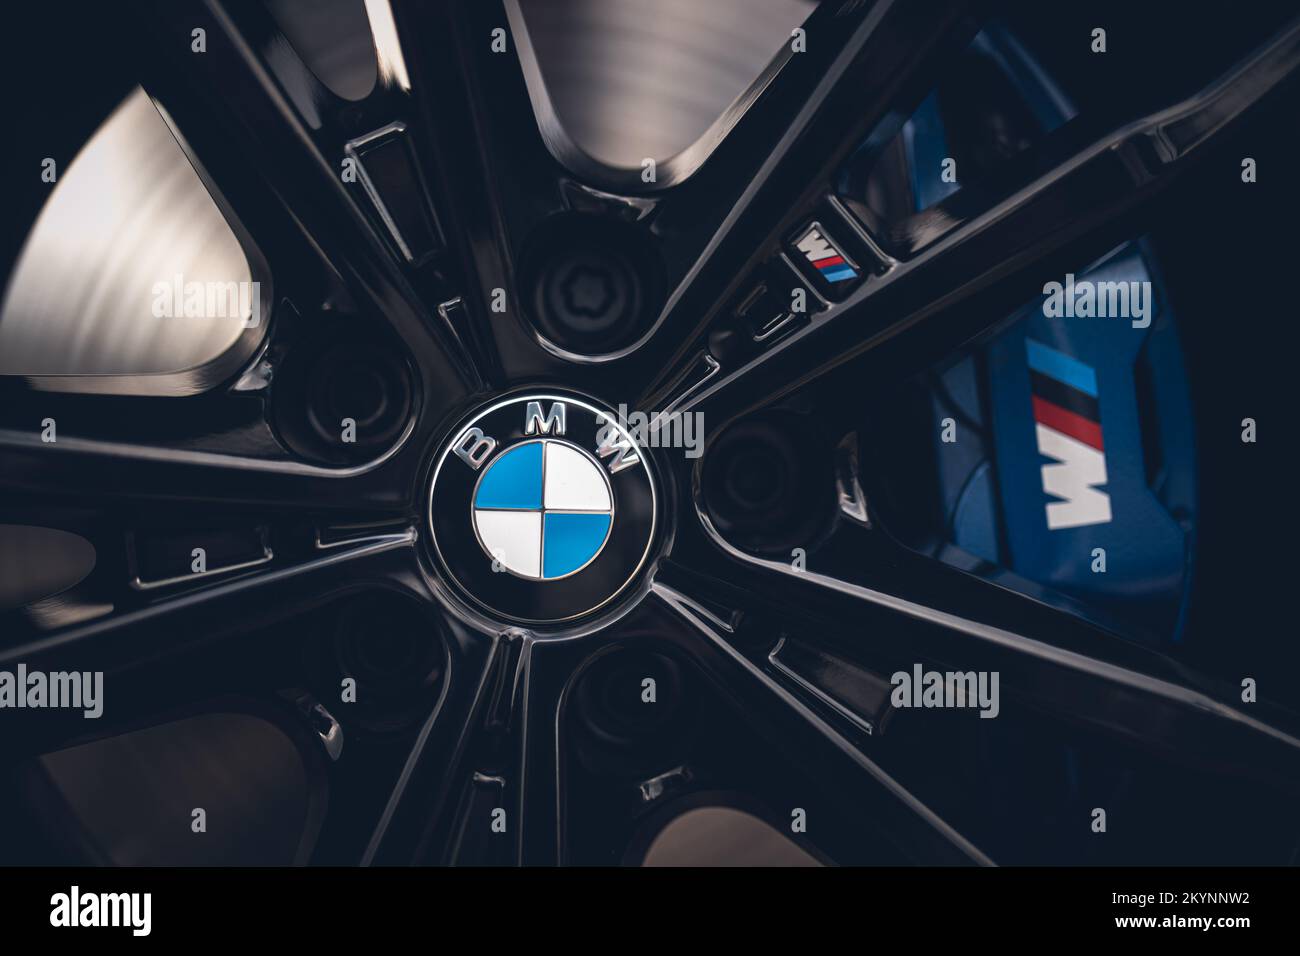 Roue et pneu BMW avec son logo dans une voiture de dernière génération  Photo Stock - Alamy